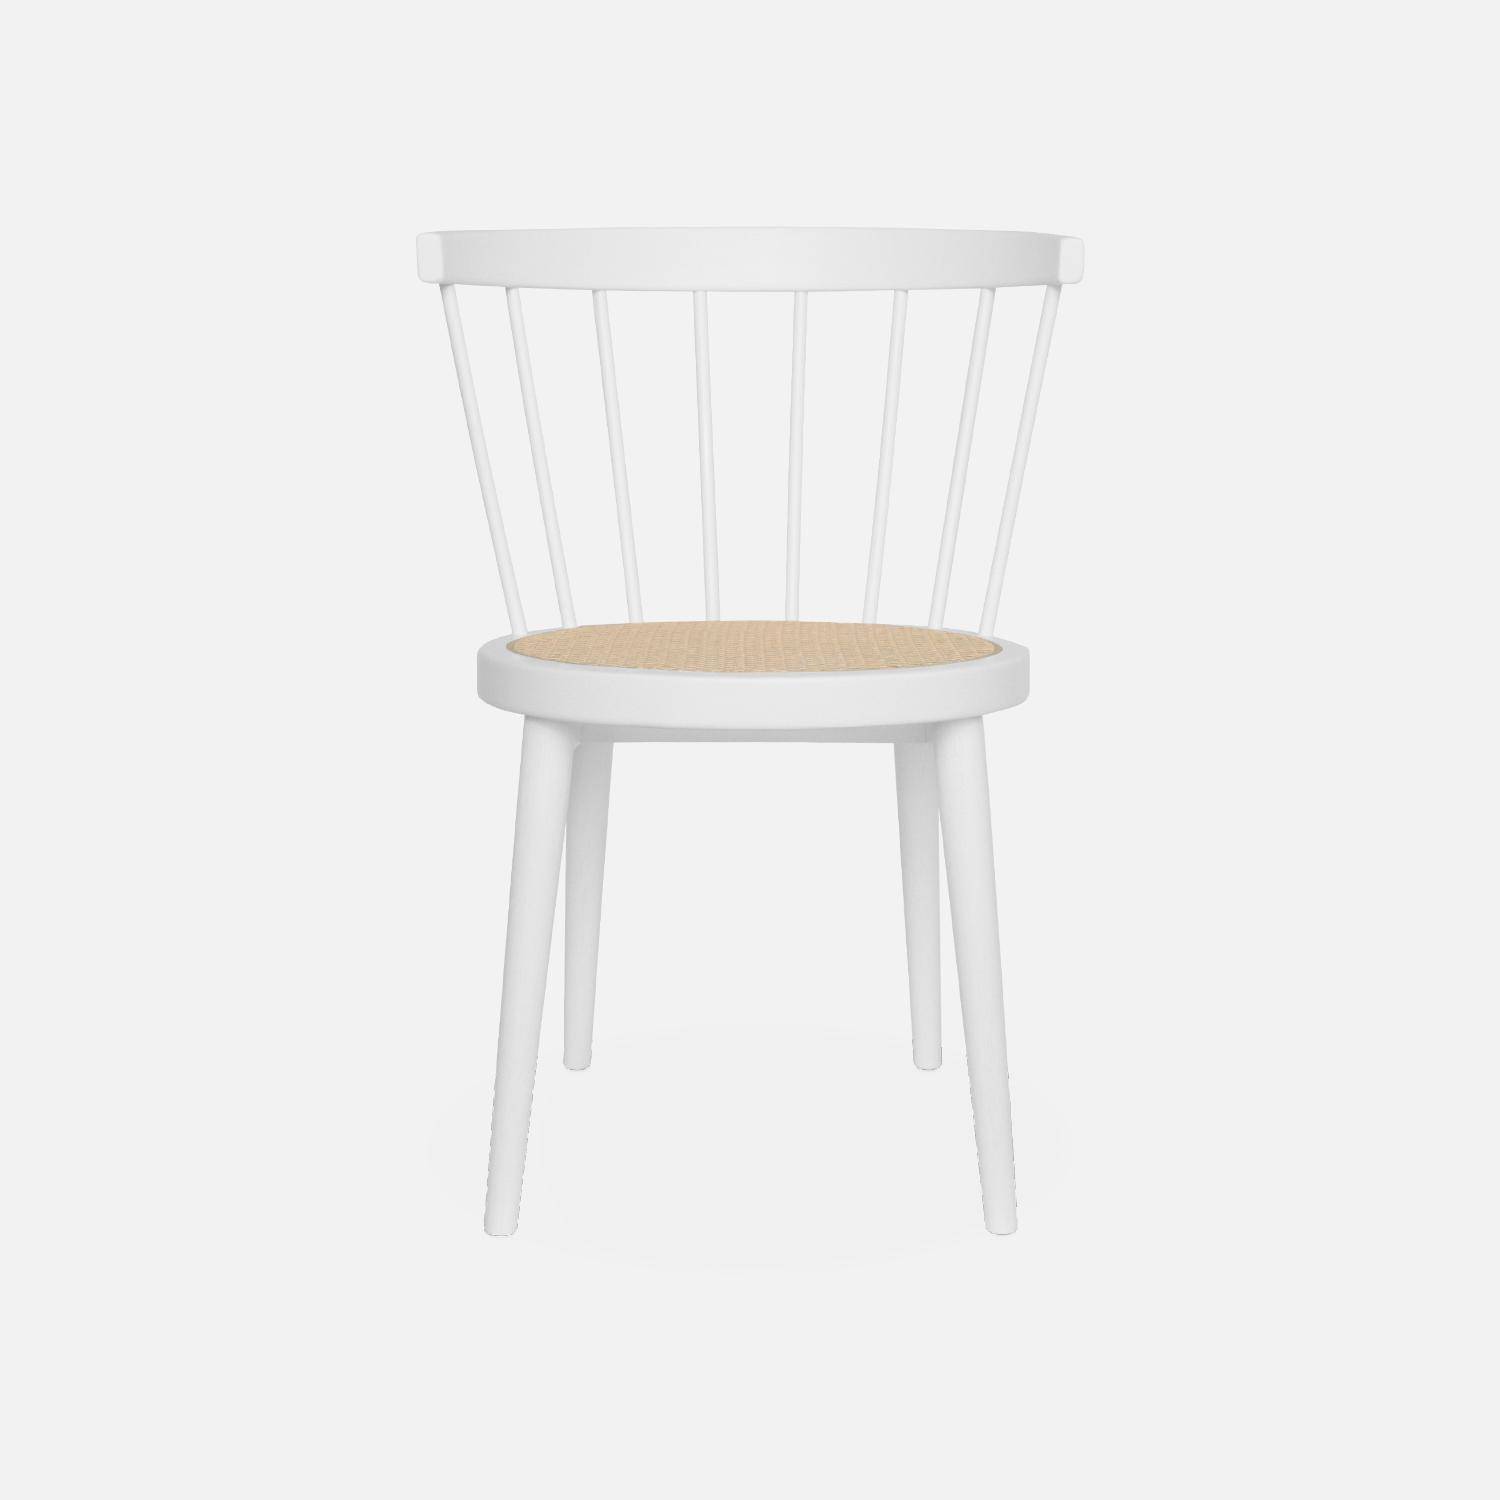 Set di 2 sedie in legno bianco e canna, Nora, L 54 x P 54 x H 76,5 cm. Photo5